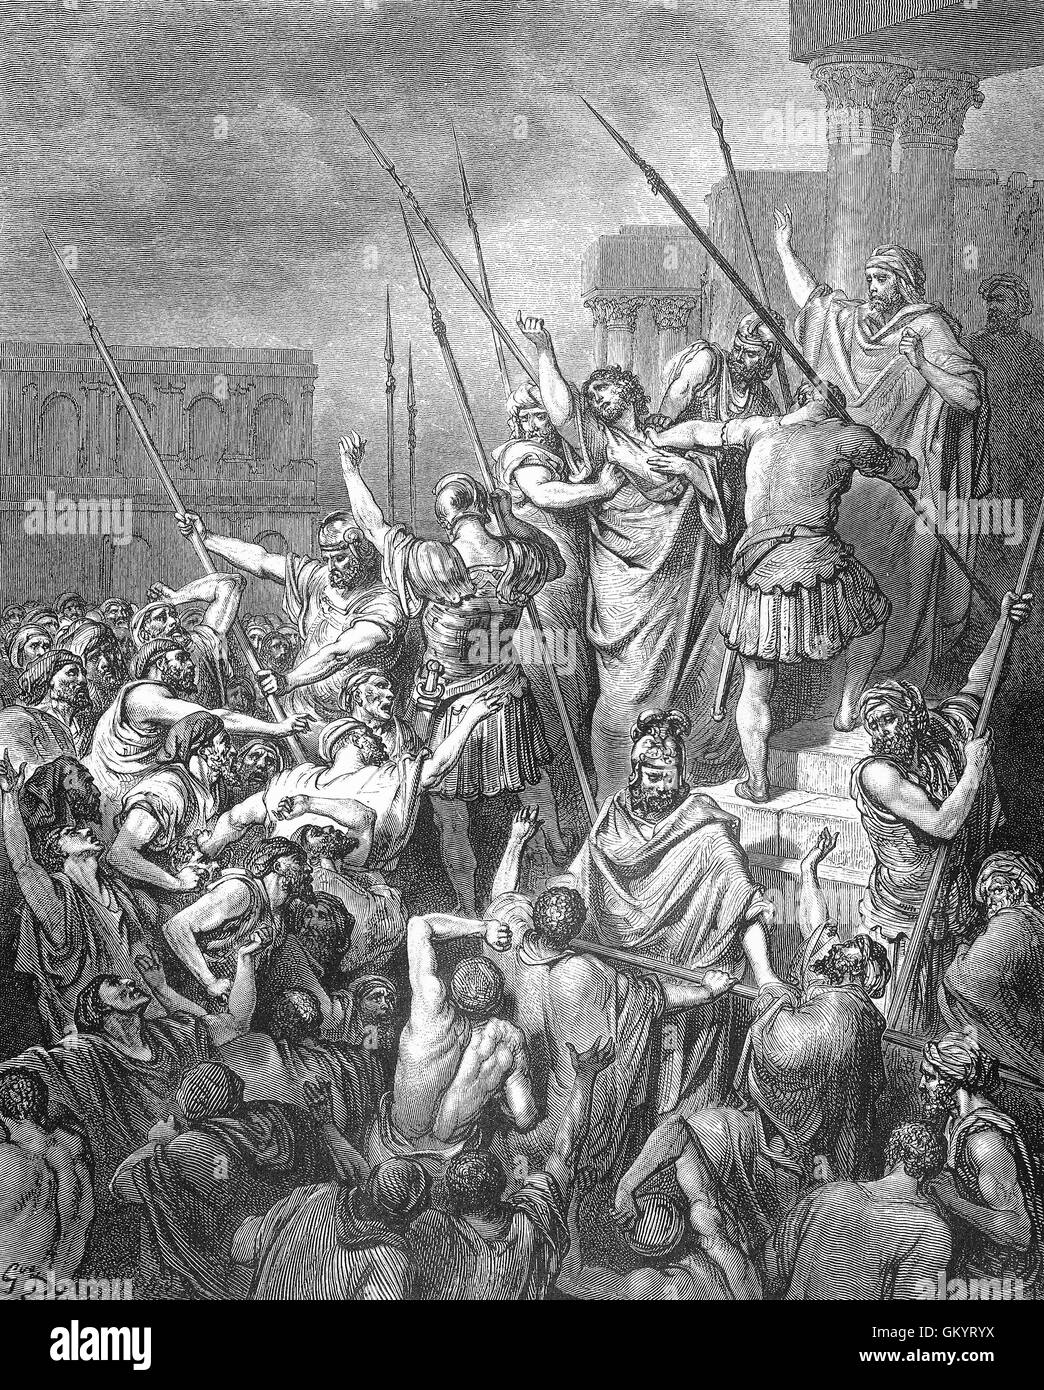 Grabado de San Pablo, rescatado de la multitud por Gustave Doré Foto de stock